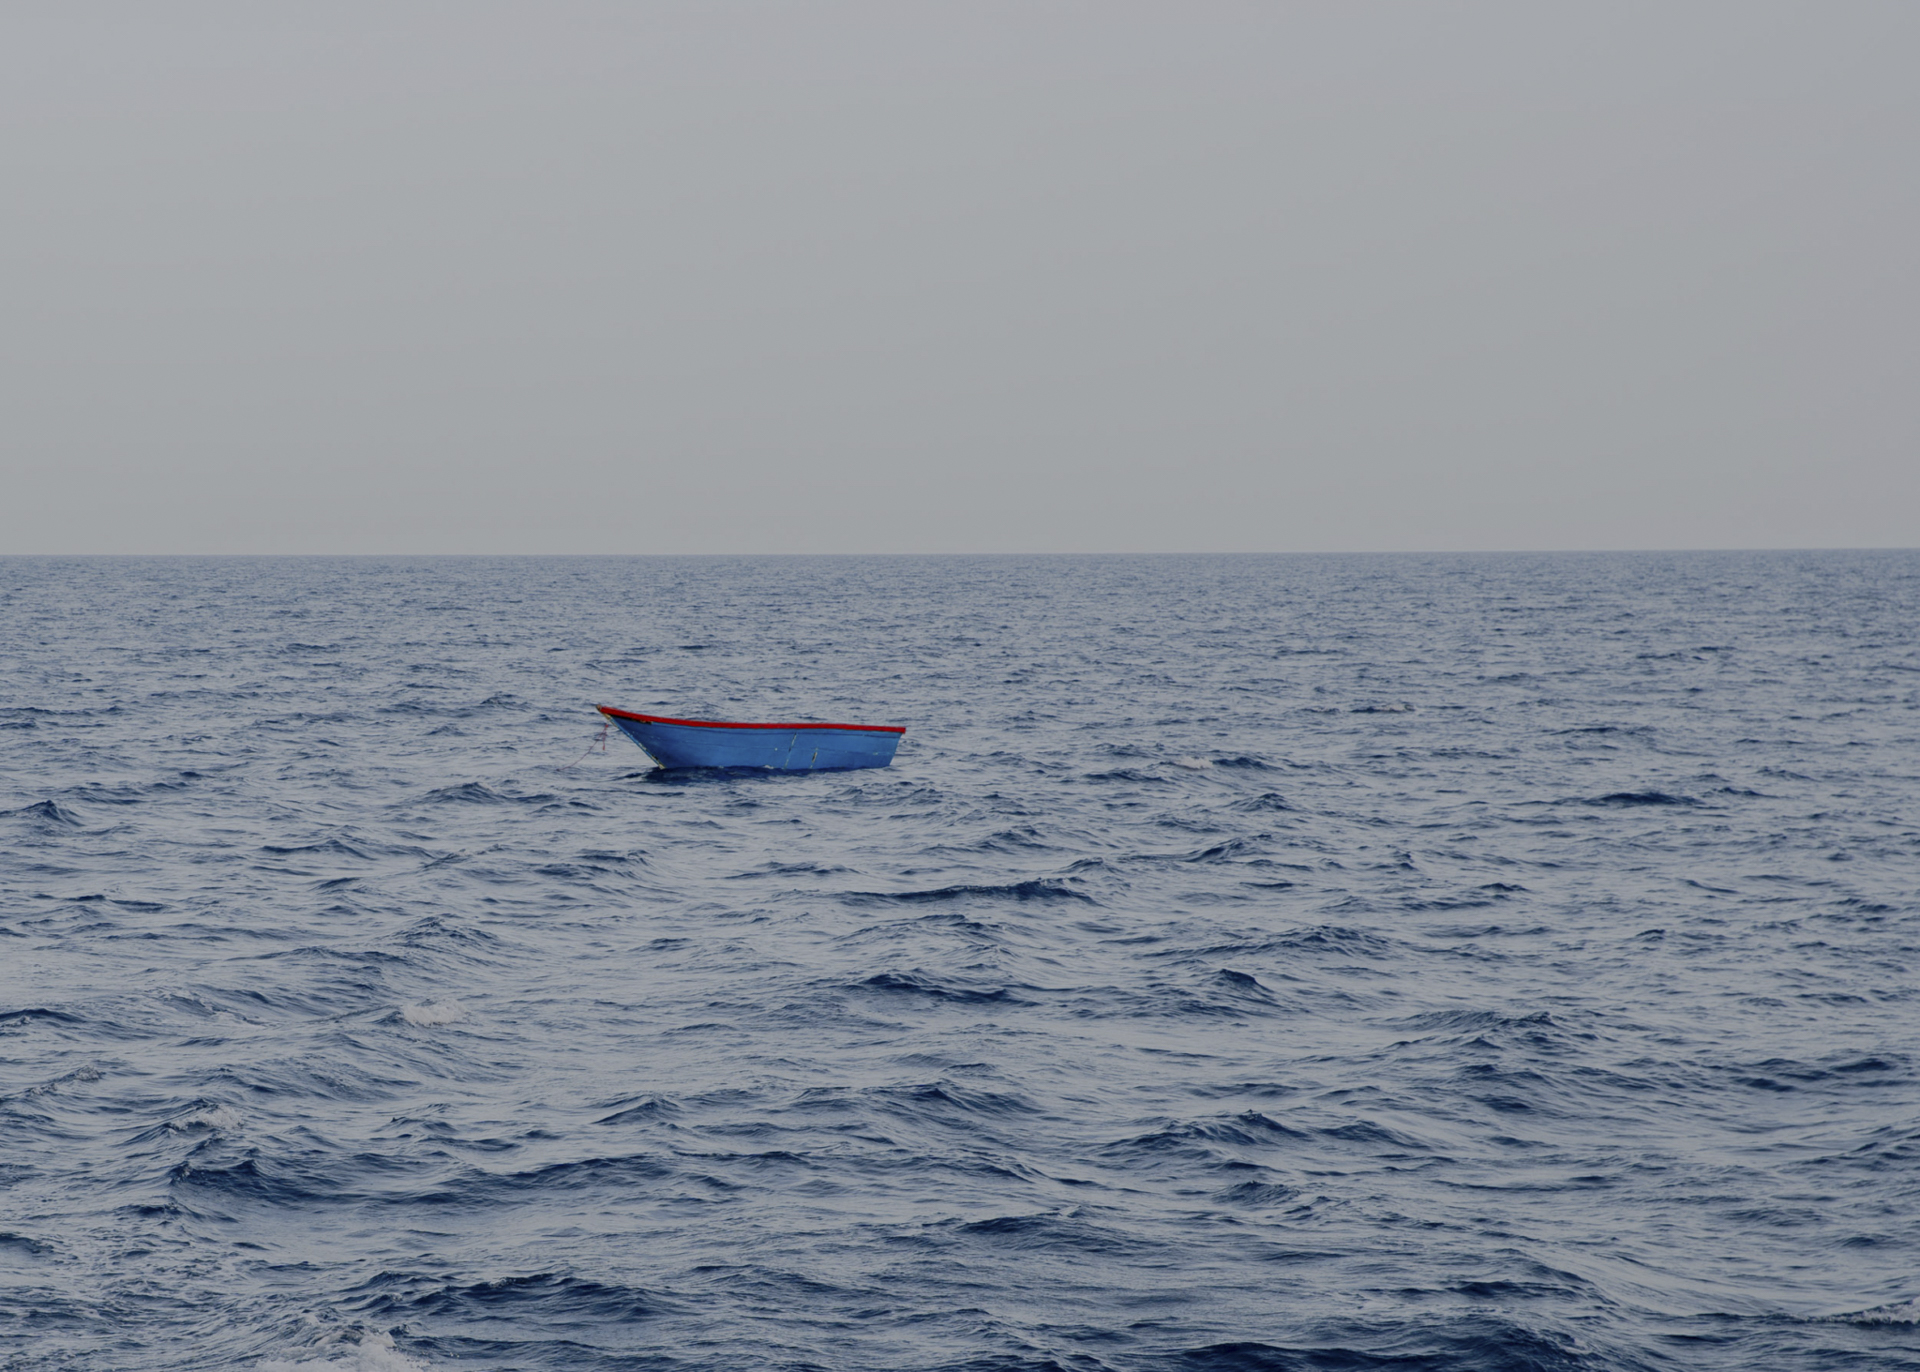 Lockdown in the Mediterranean. Ein leeres Holzboot im Mittelmeer. Weil der Motor nicht mehr zu sehen ist, vermutet die Sea-Watch-Crew, dass die Menschen, die fliehen wollten, von der sogenannten libyschen Küstenwache aufgegriffen und zurück aufs Festland gebracht wurden. 17.06.2020, zentrales Mittelmeer. © Laila Sieber